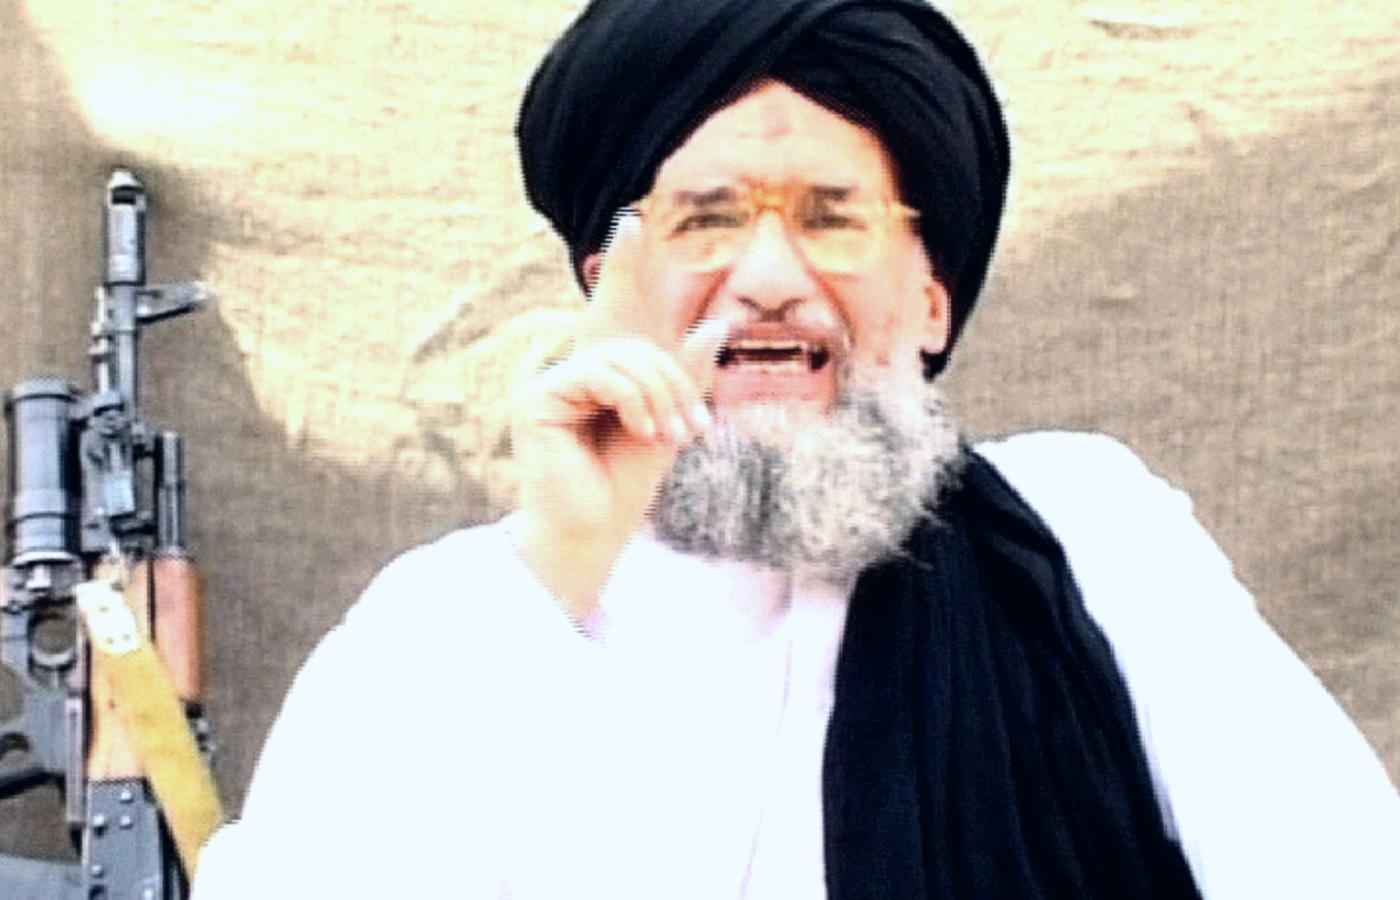 O zgubie Zawahiriego zdecydował styl życia i zwyczaj codziennego wychodzenia na taras.